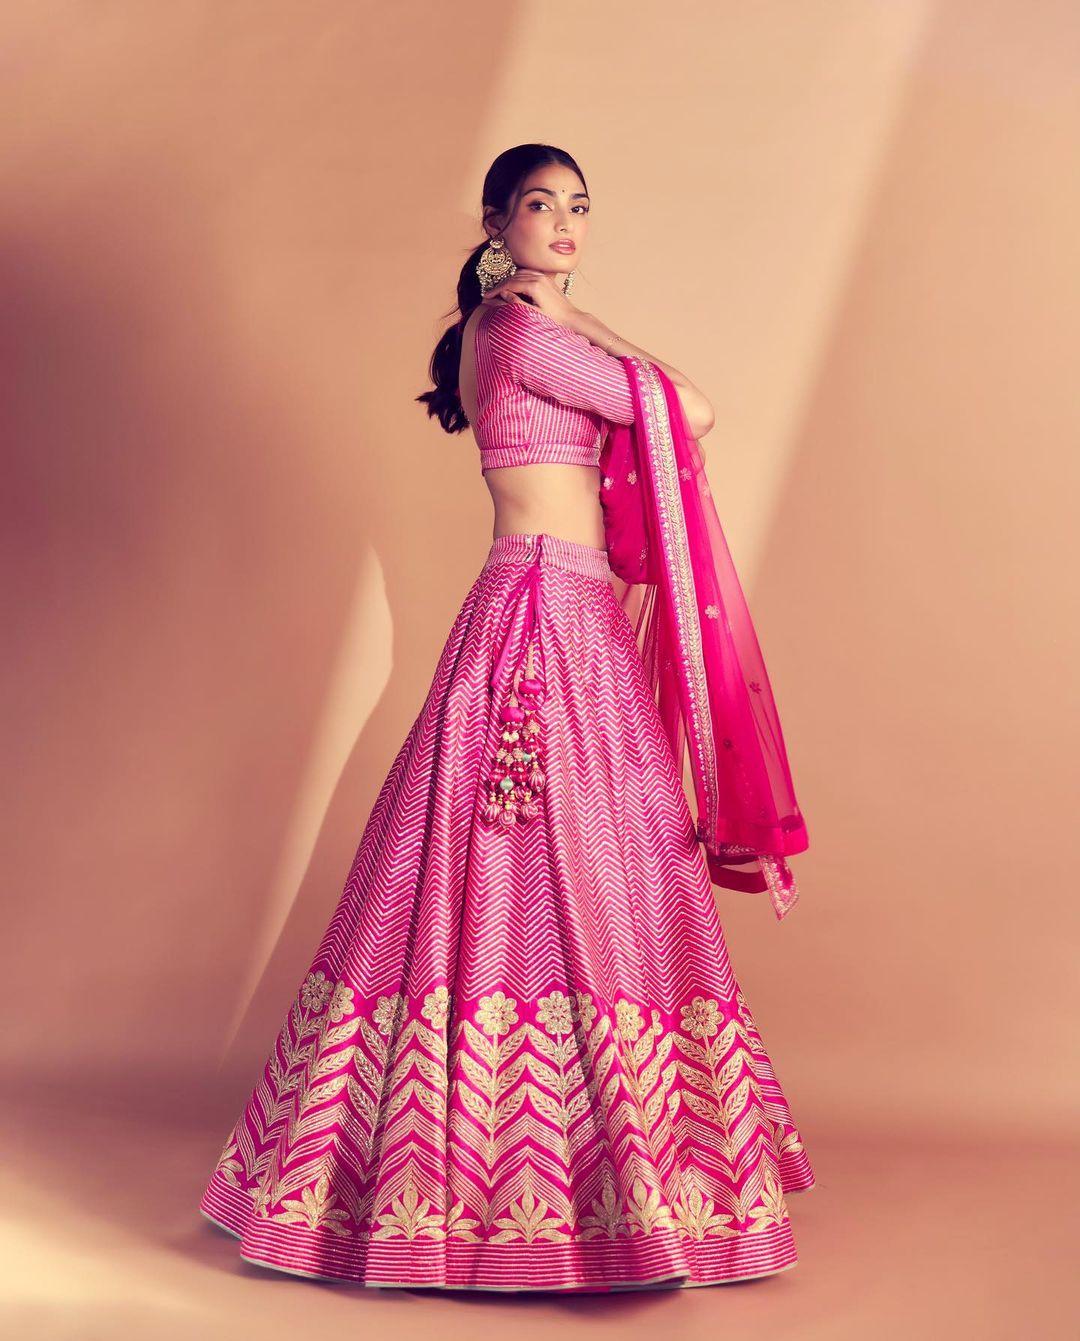 Athiya Shetty the Pink Diva